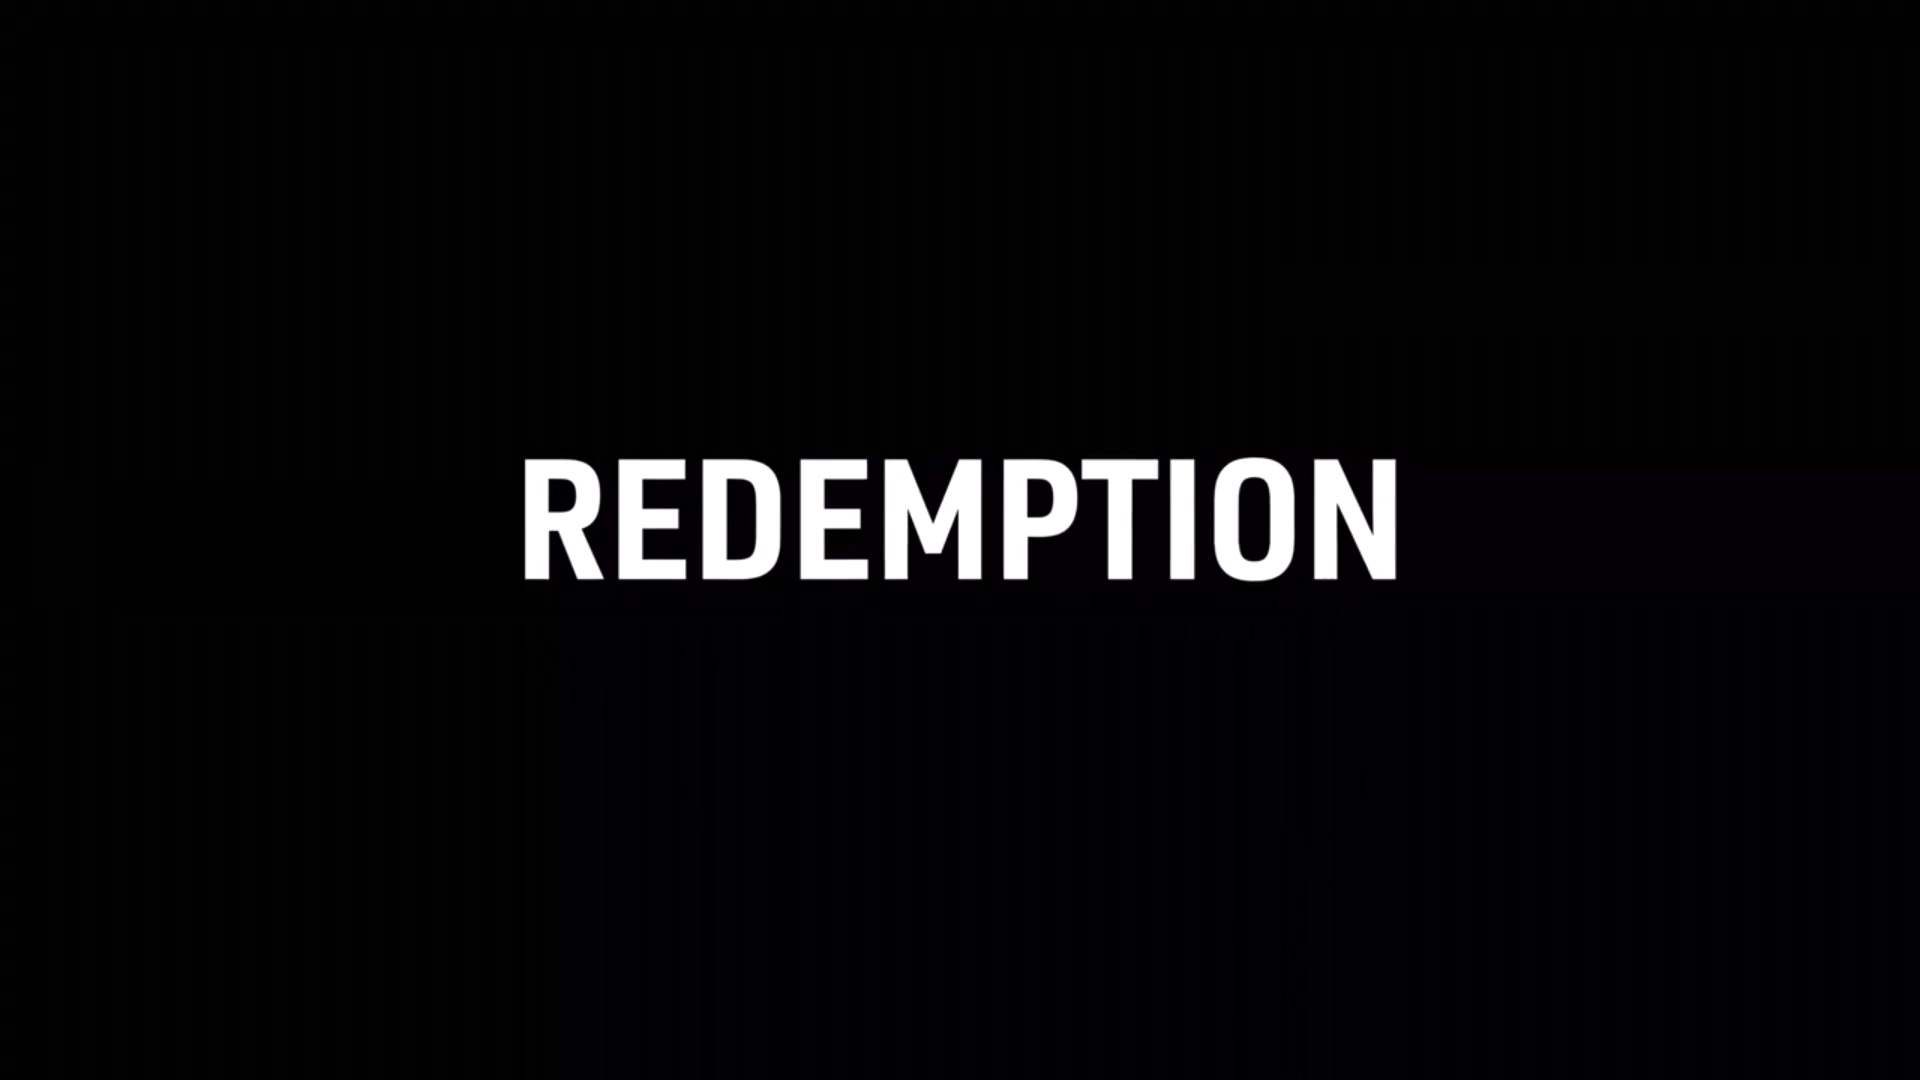 Drive to Survive - F1 Netflix series season one episode three - Redemption